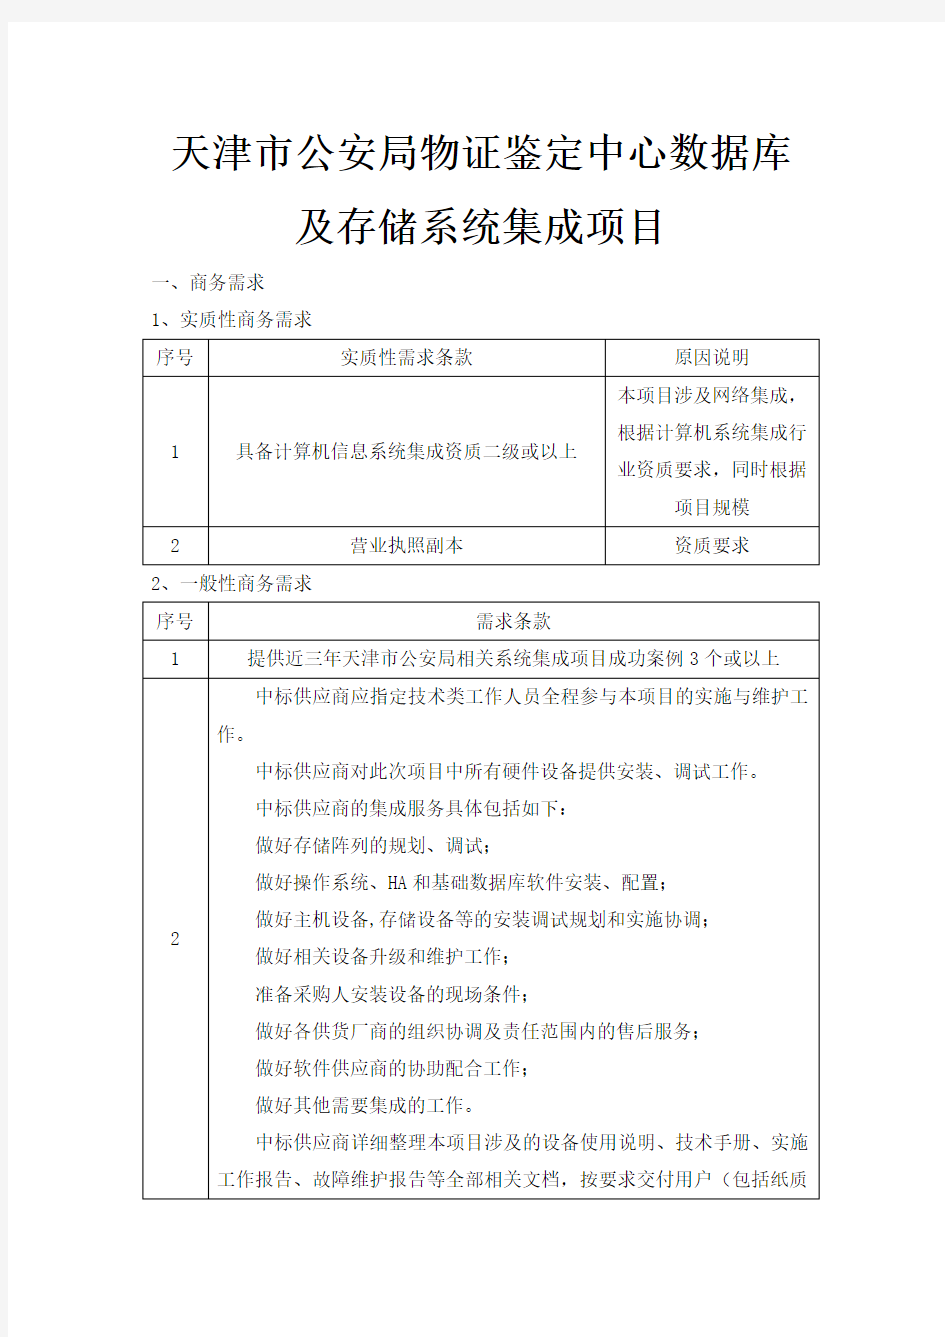 天津市公安局物证鉴定中心数据库及存储系统集成项目